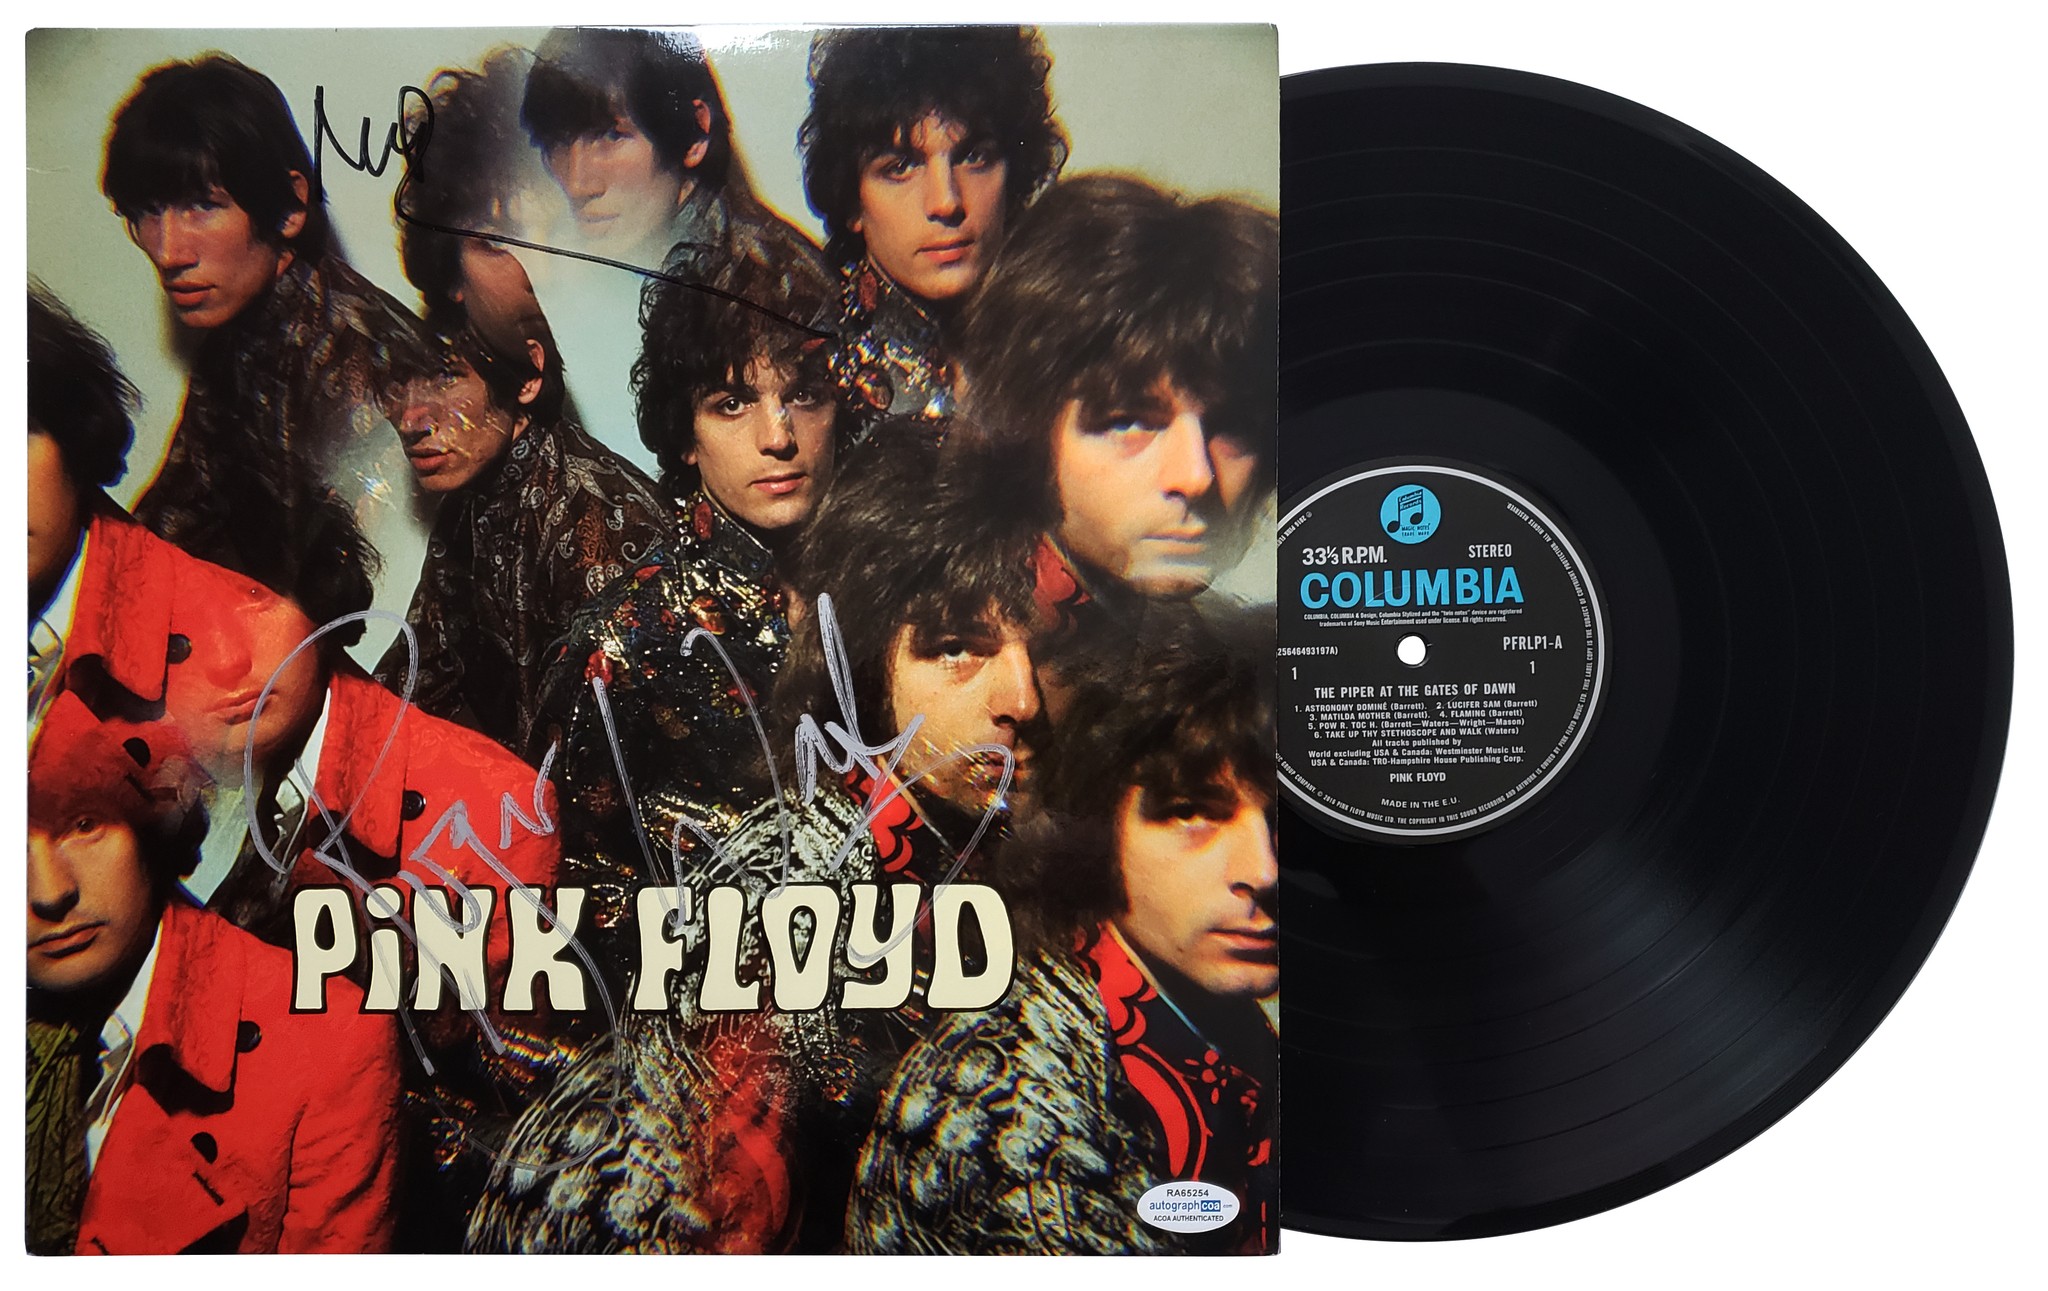 LP in vinile firmato da Roger Waters e Nick Mason dei Pink Floyd